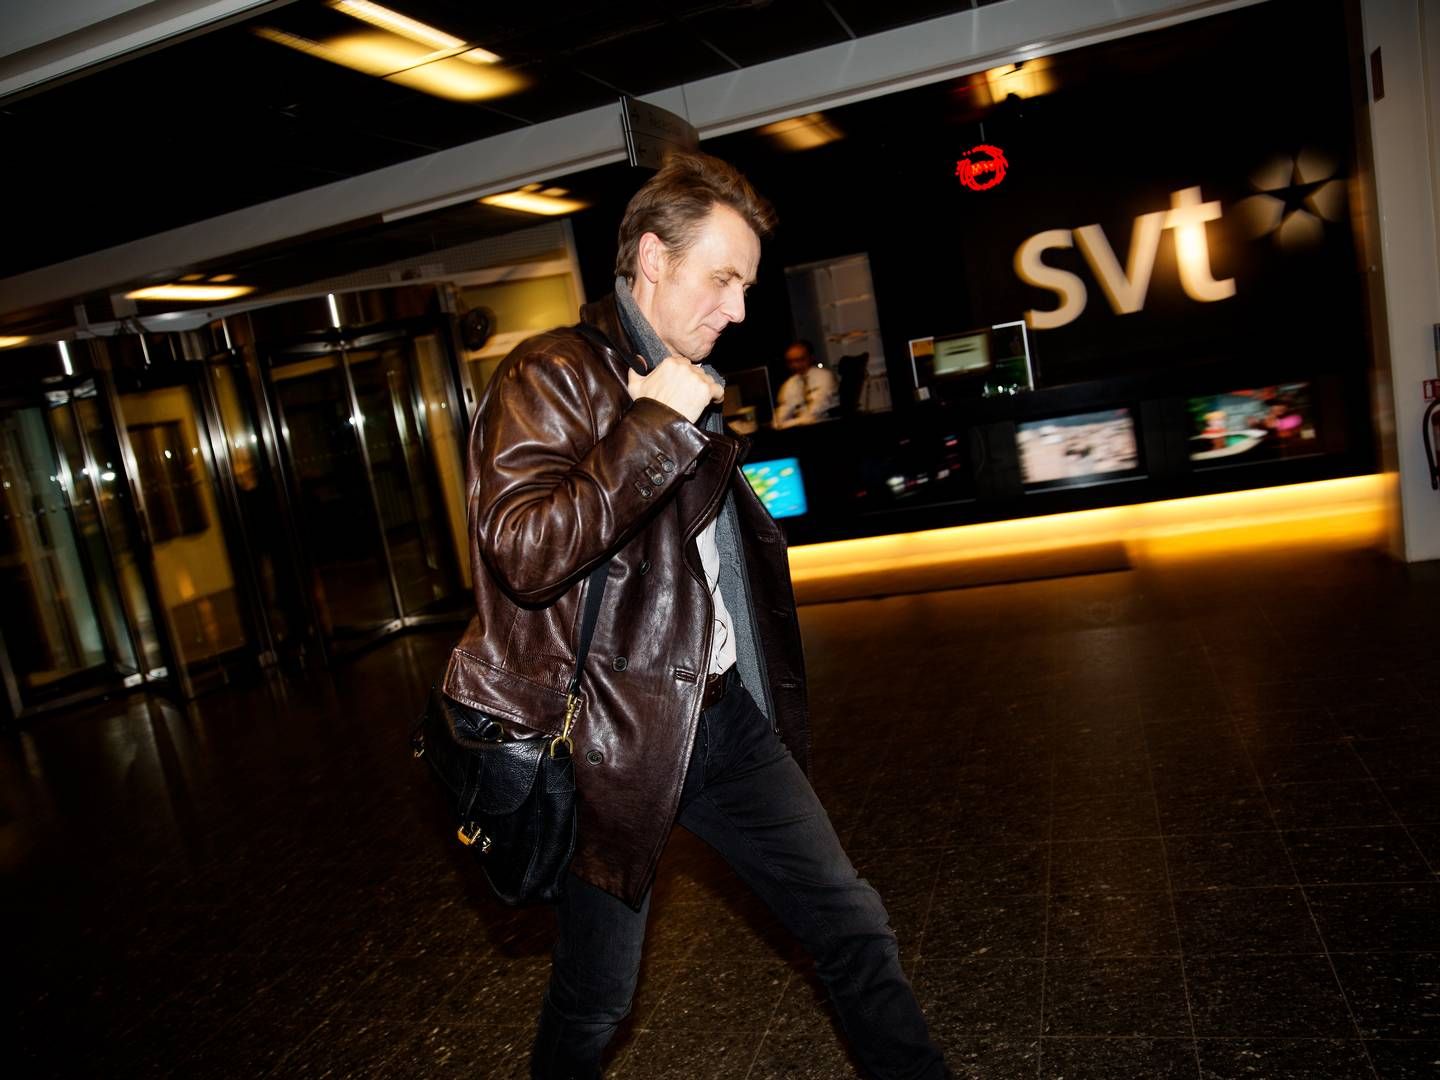 SVT skal spare 200 mio. svenske kr. Dette er et arkivbillede med værten på det populære norsk-svenske talkshow "Sakvlan", der blev filmet og produceret af SVT i flere sæsoner. | Foto: Jacob Ehrbahn